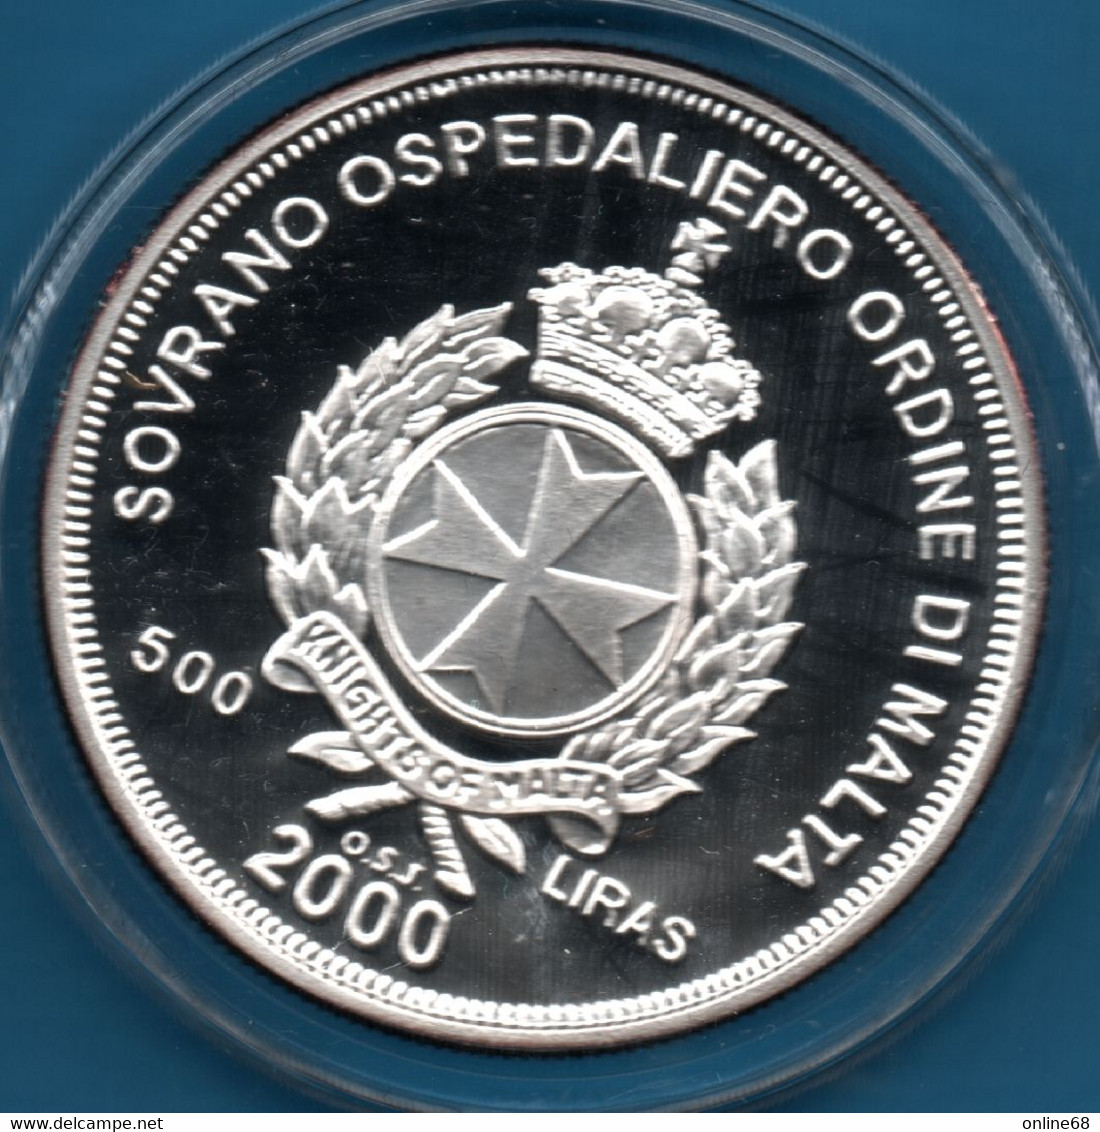 ORDINE DI MALTA 500 LIRAS 2000 KM# X# 304  Argent 999‰ Silver  PROOF THE GREAT SIEGE - Malta (Ordre Van)